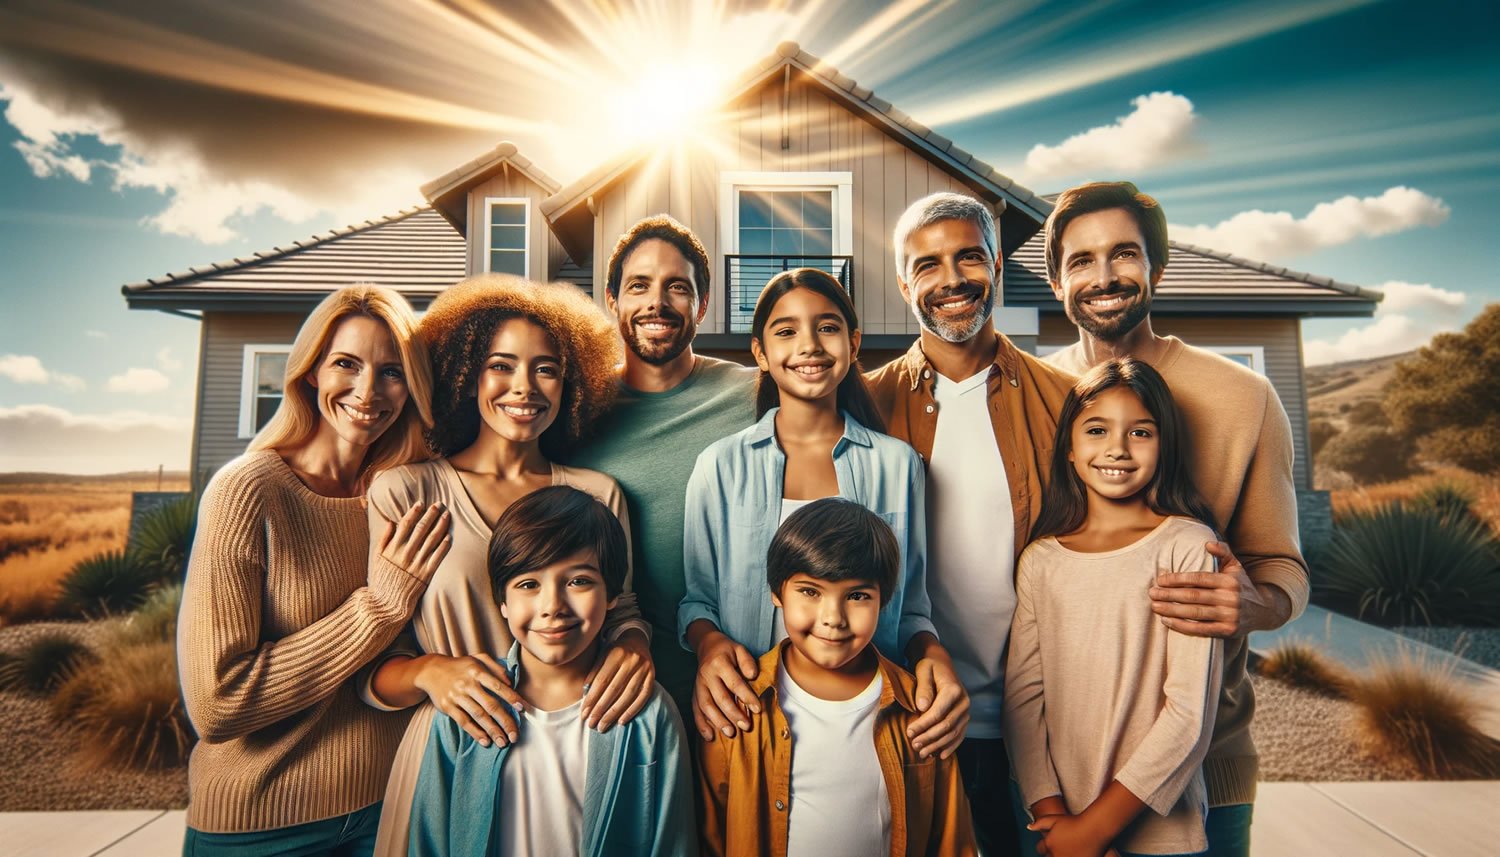 Imagem de uma família sorrindo em frente a uma casa moderna com céu claro ao fundo, simbolizando a segurança proporcionada por um seguro de vida.